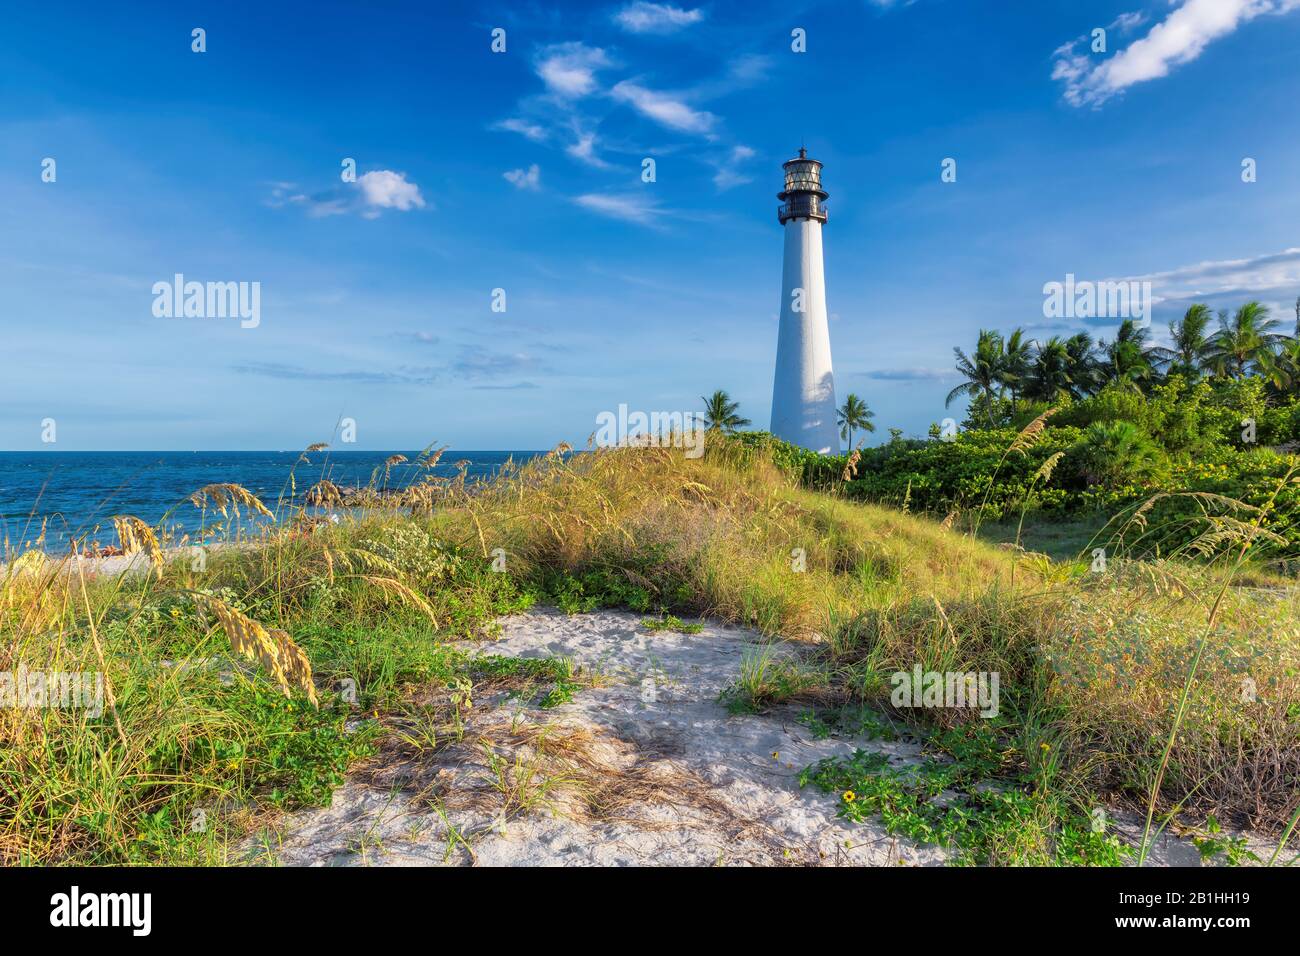 Cape Florida Lighthouse on the beach dunes, Miami, Florida, USA Stock Photo